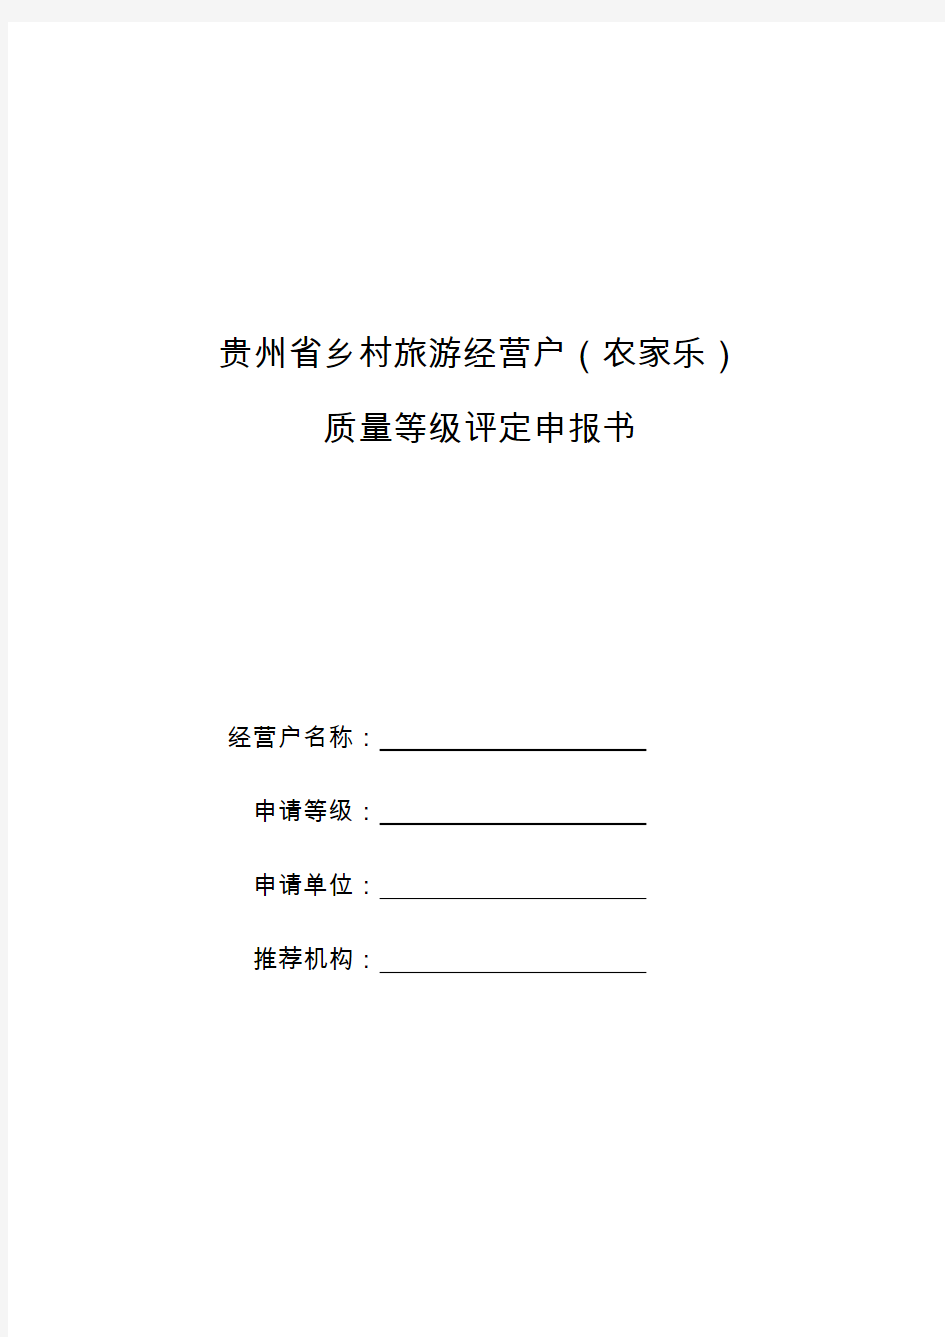 贵州省乡村旅游经营户(农家乐)质量等级评定申报书(更新版)